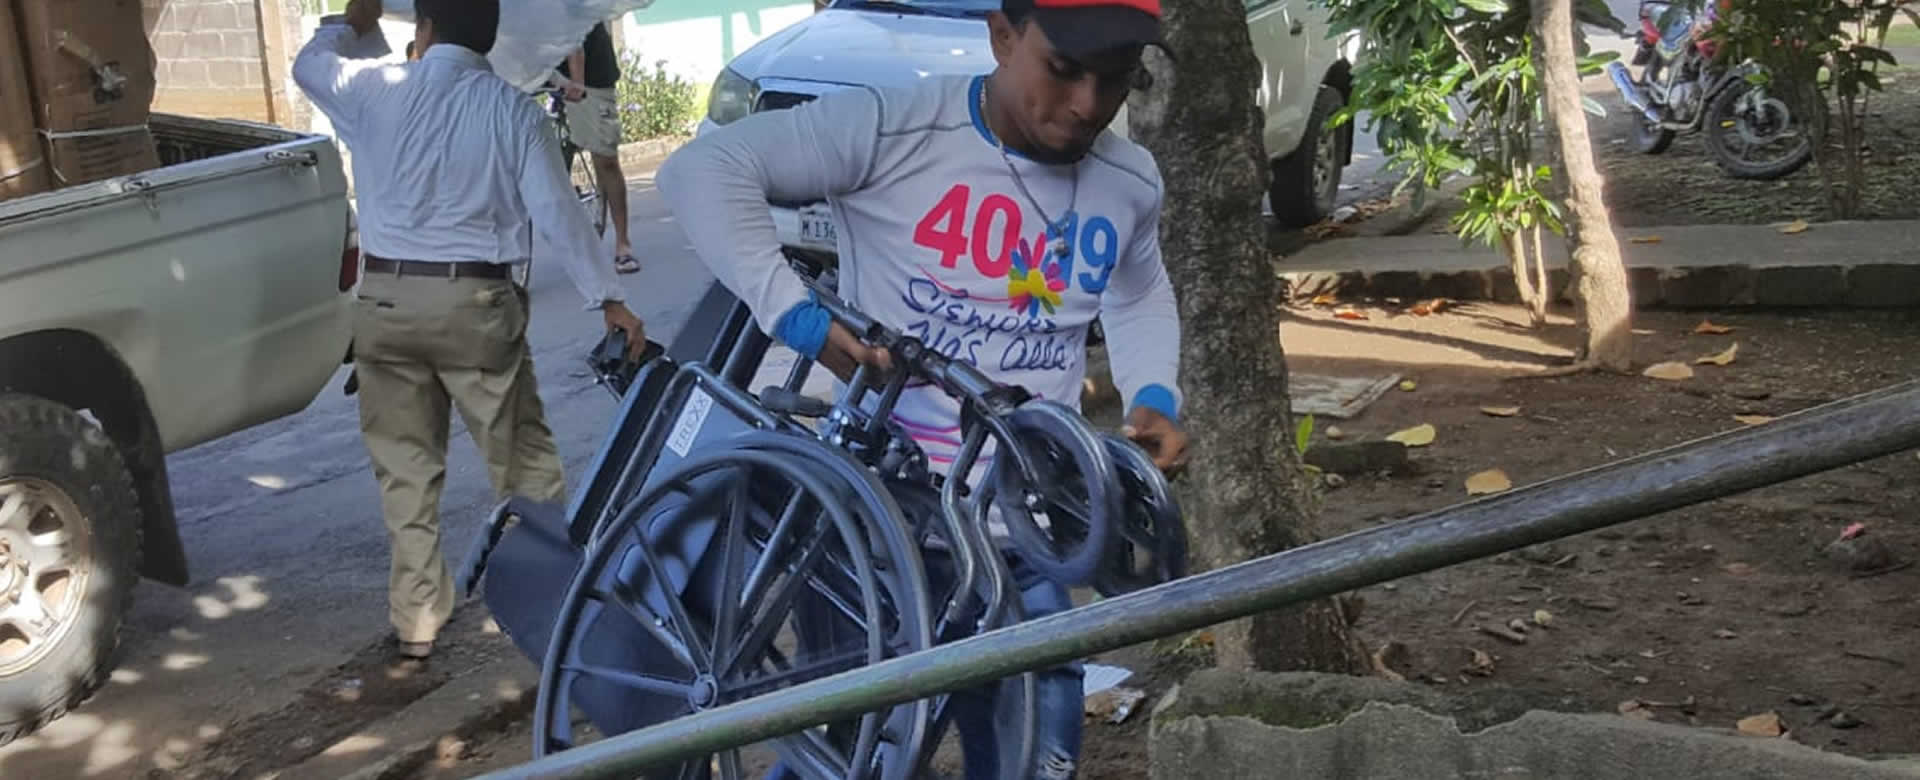 Entregan sillas de rueda a personas con discapacidad de Managua